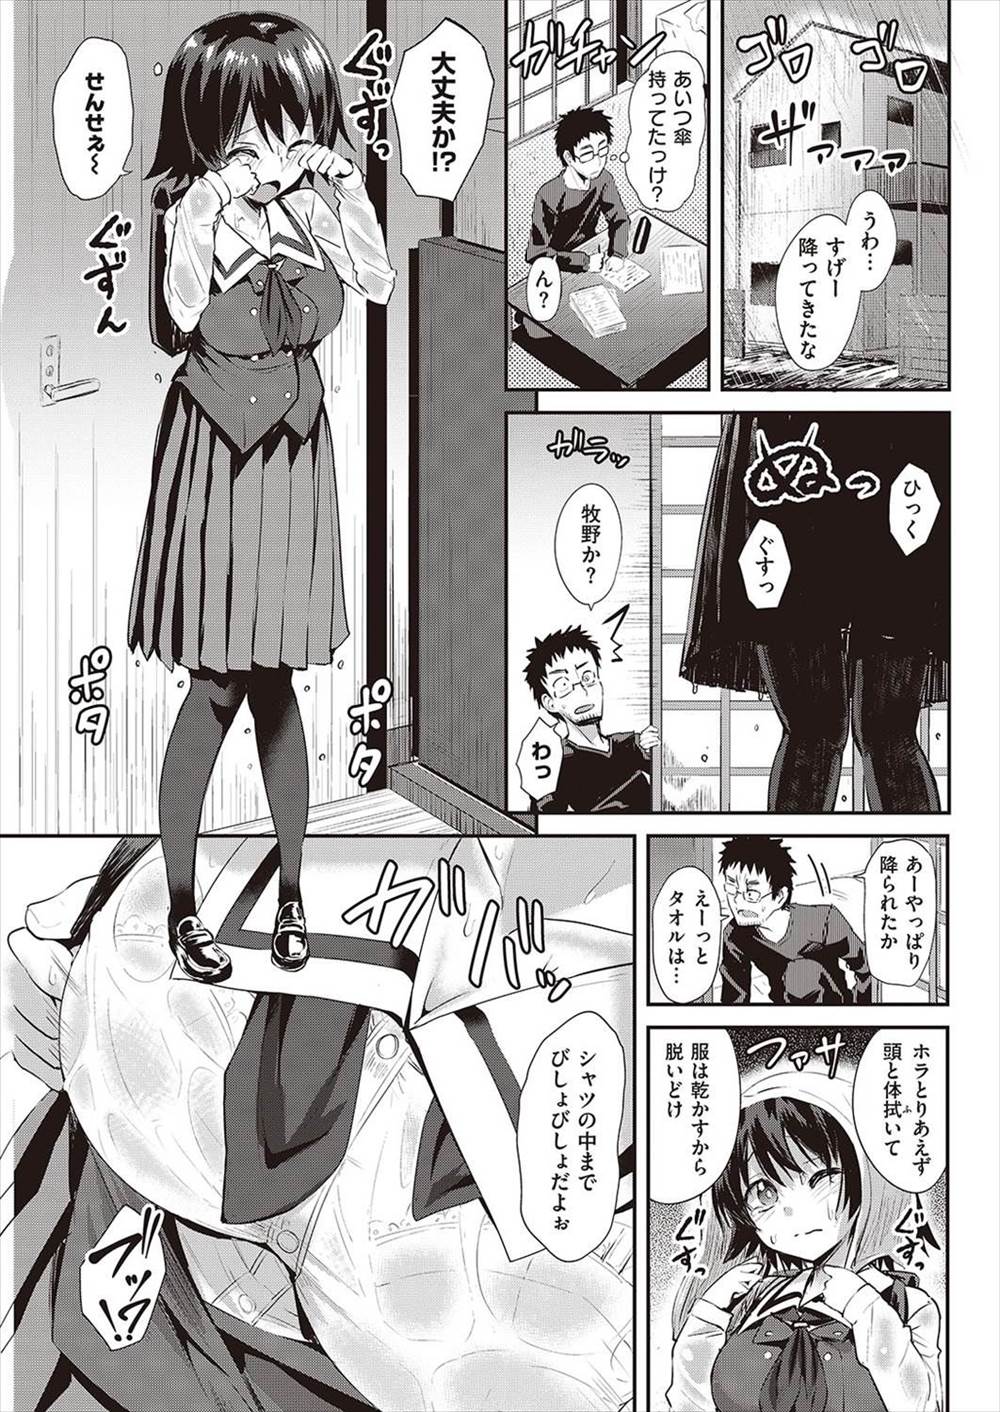 【エロ漫画】雨の日に生徒の透けブラみてしまった先生が勃起してJC少女に手を出してしまうｗｗｗｗｗ